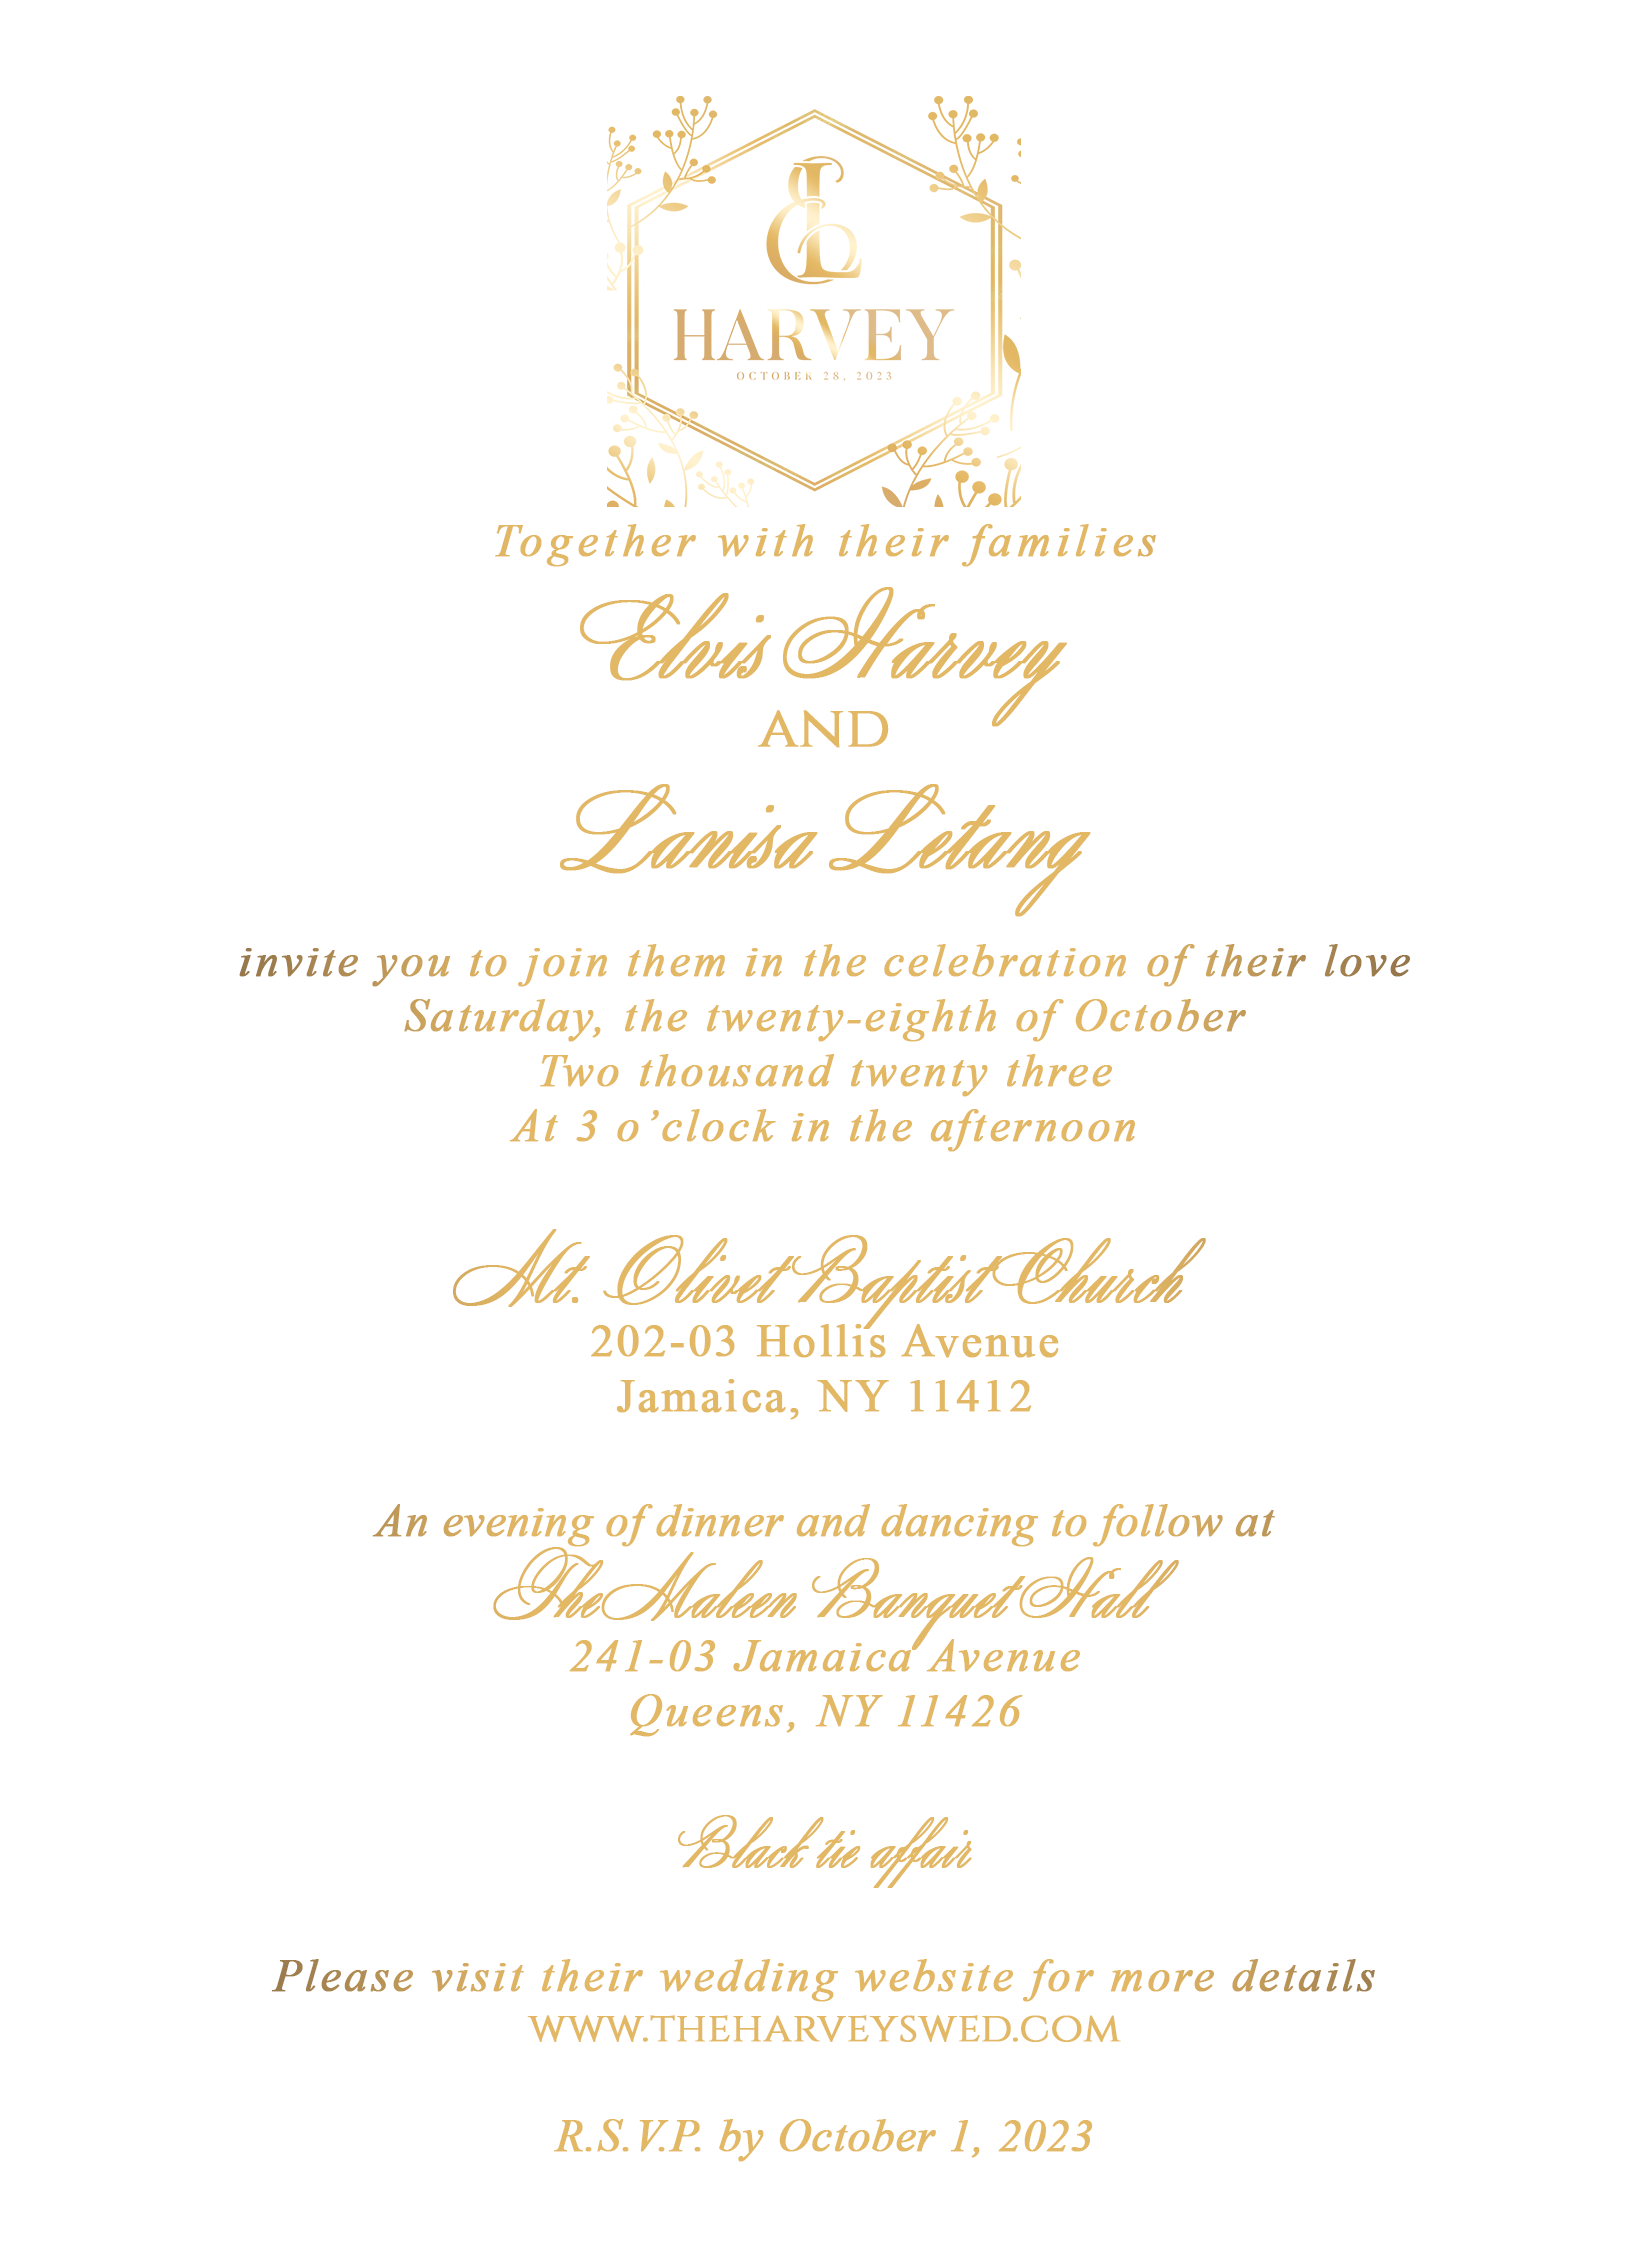 The Wedding Website of Lanisa Letang and Elvis Harvey